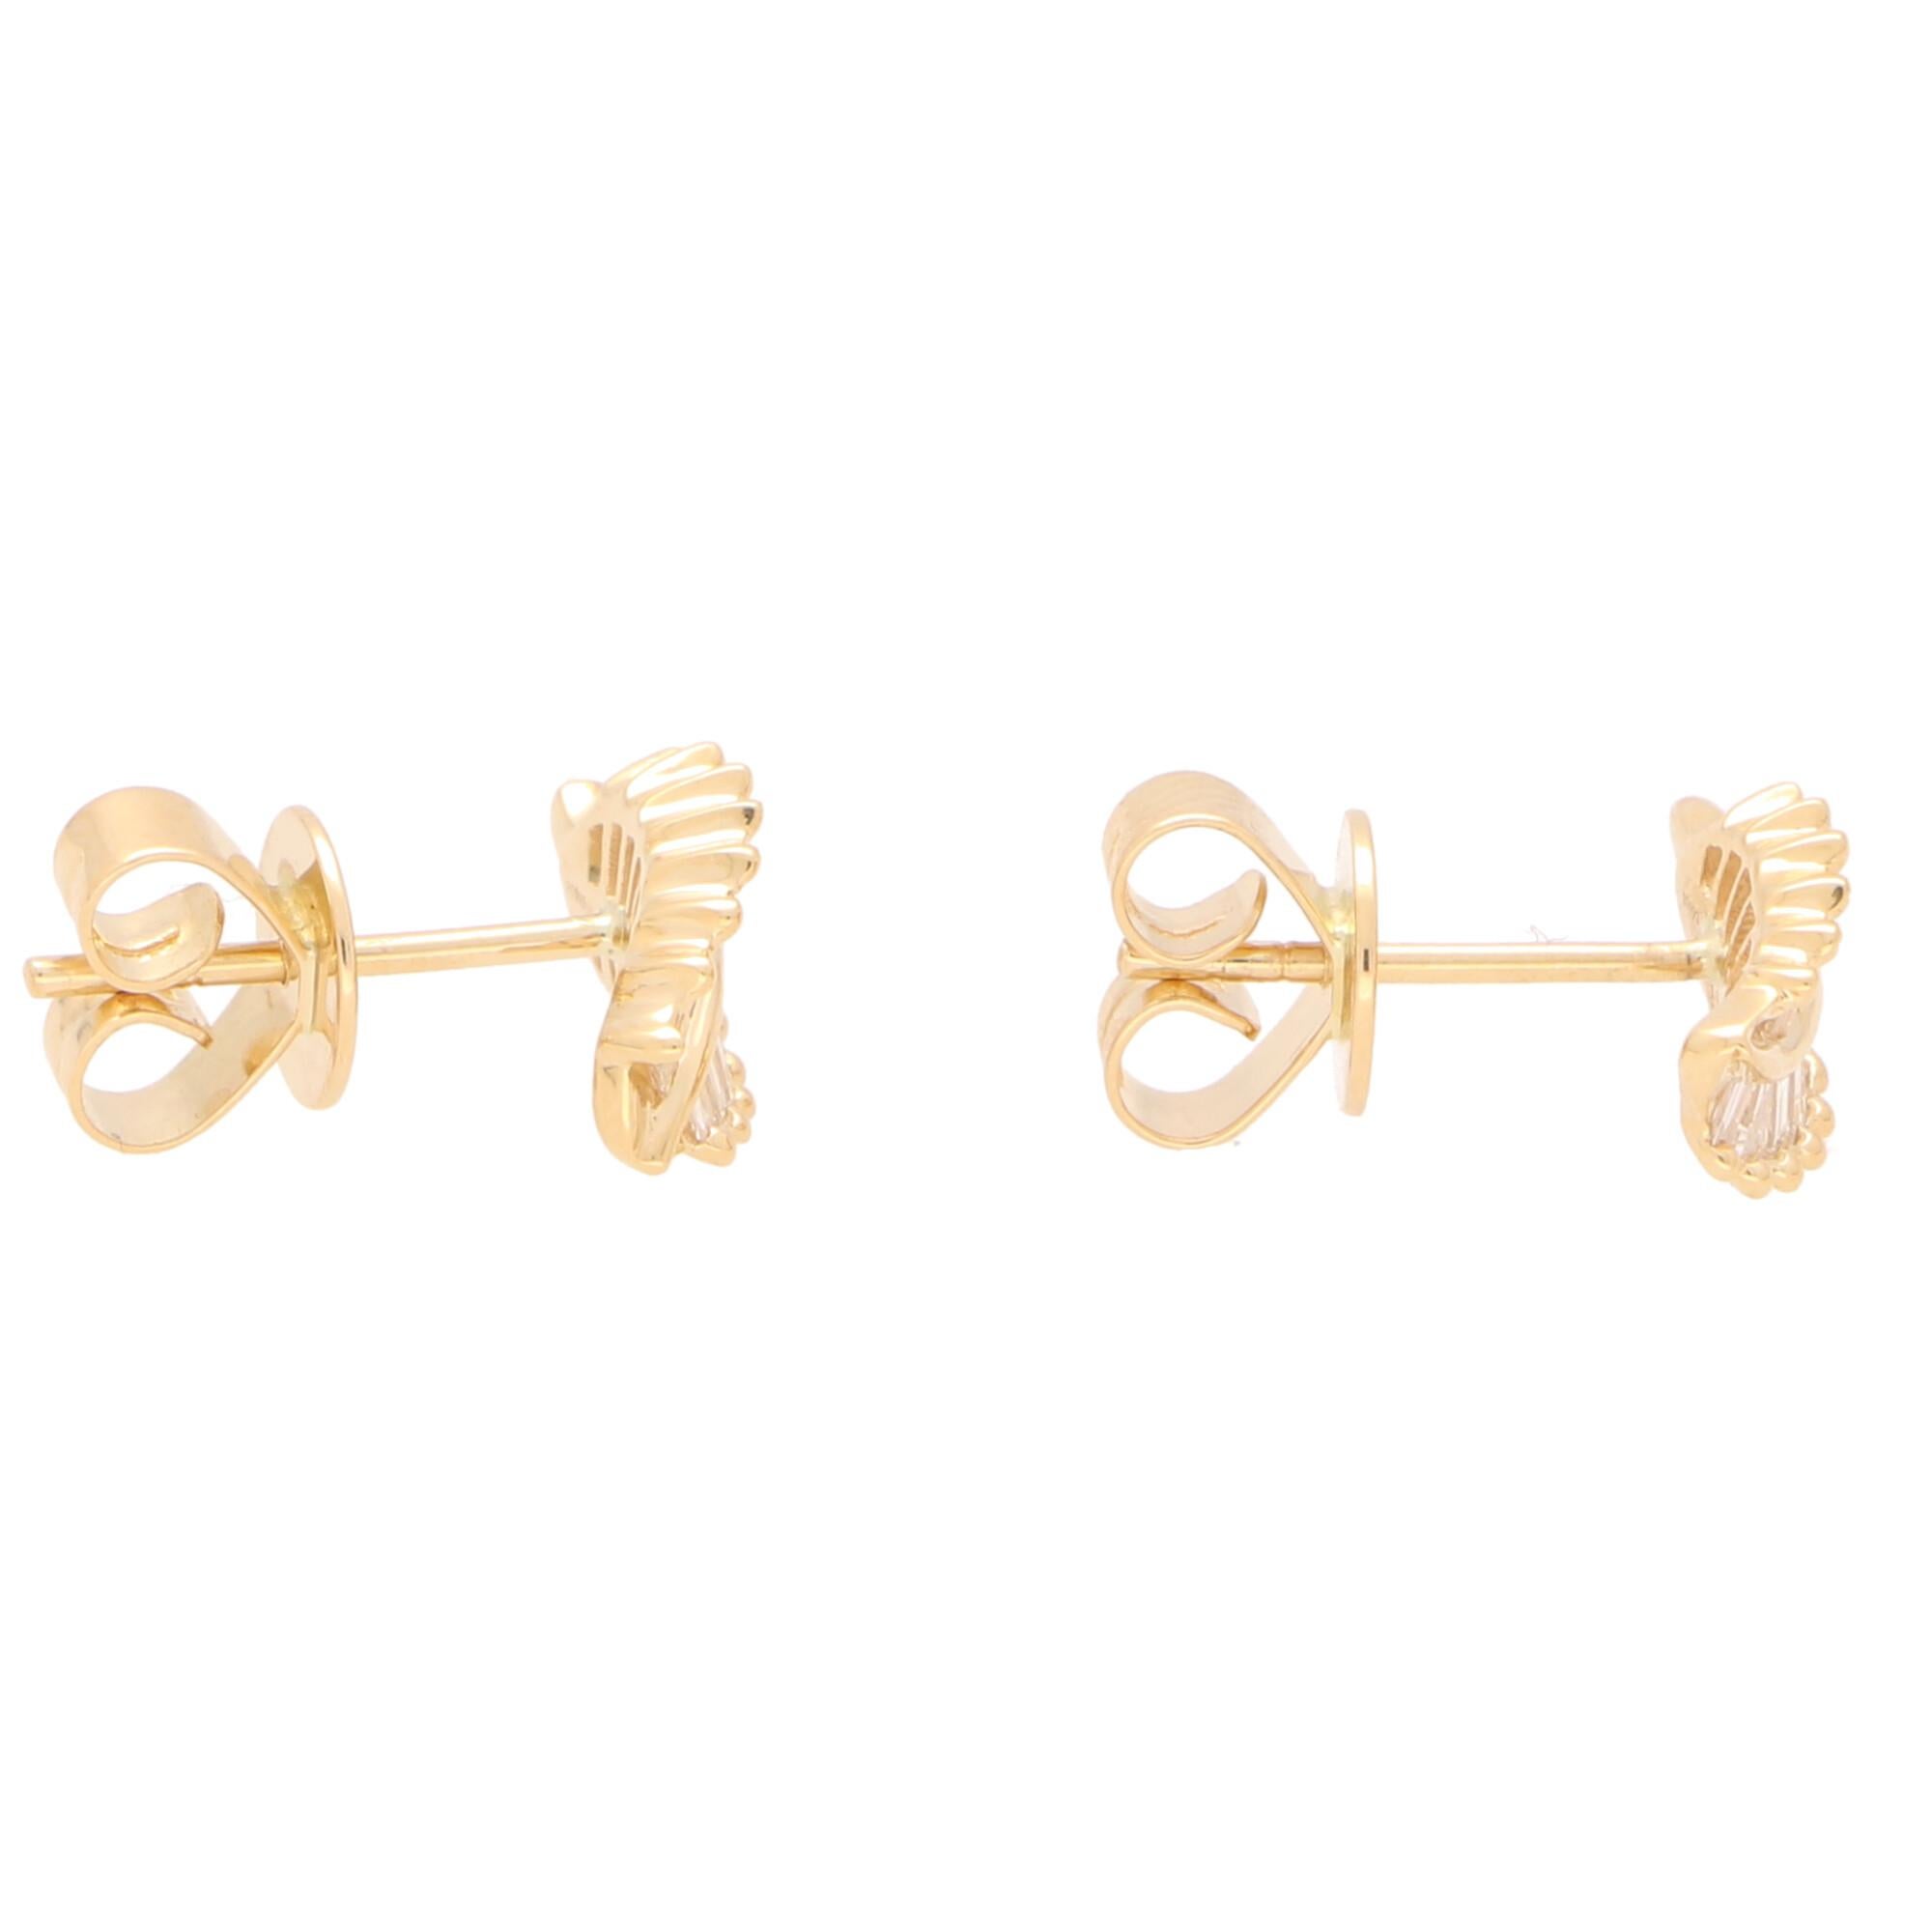 Modern Baguette Cut Diamond Leaf Stud Earrings Set in 18 Karat Yellow Gold For Sale